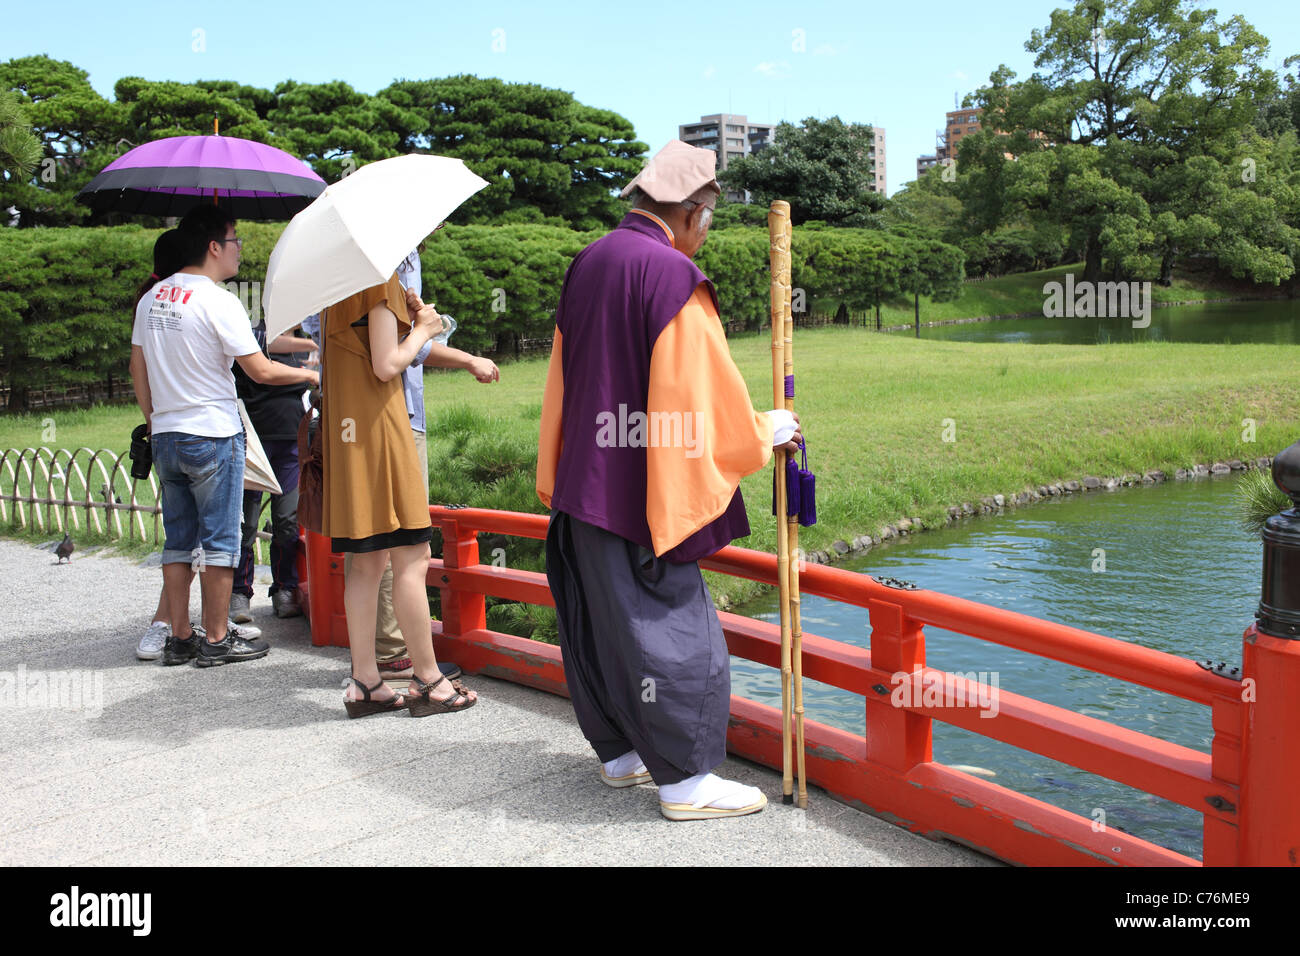 Giapponese vecchio in costume cosplay gioco dell'esterno. Si immagini il signore di una vecchia era del Giappone. Foto Stock